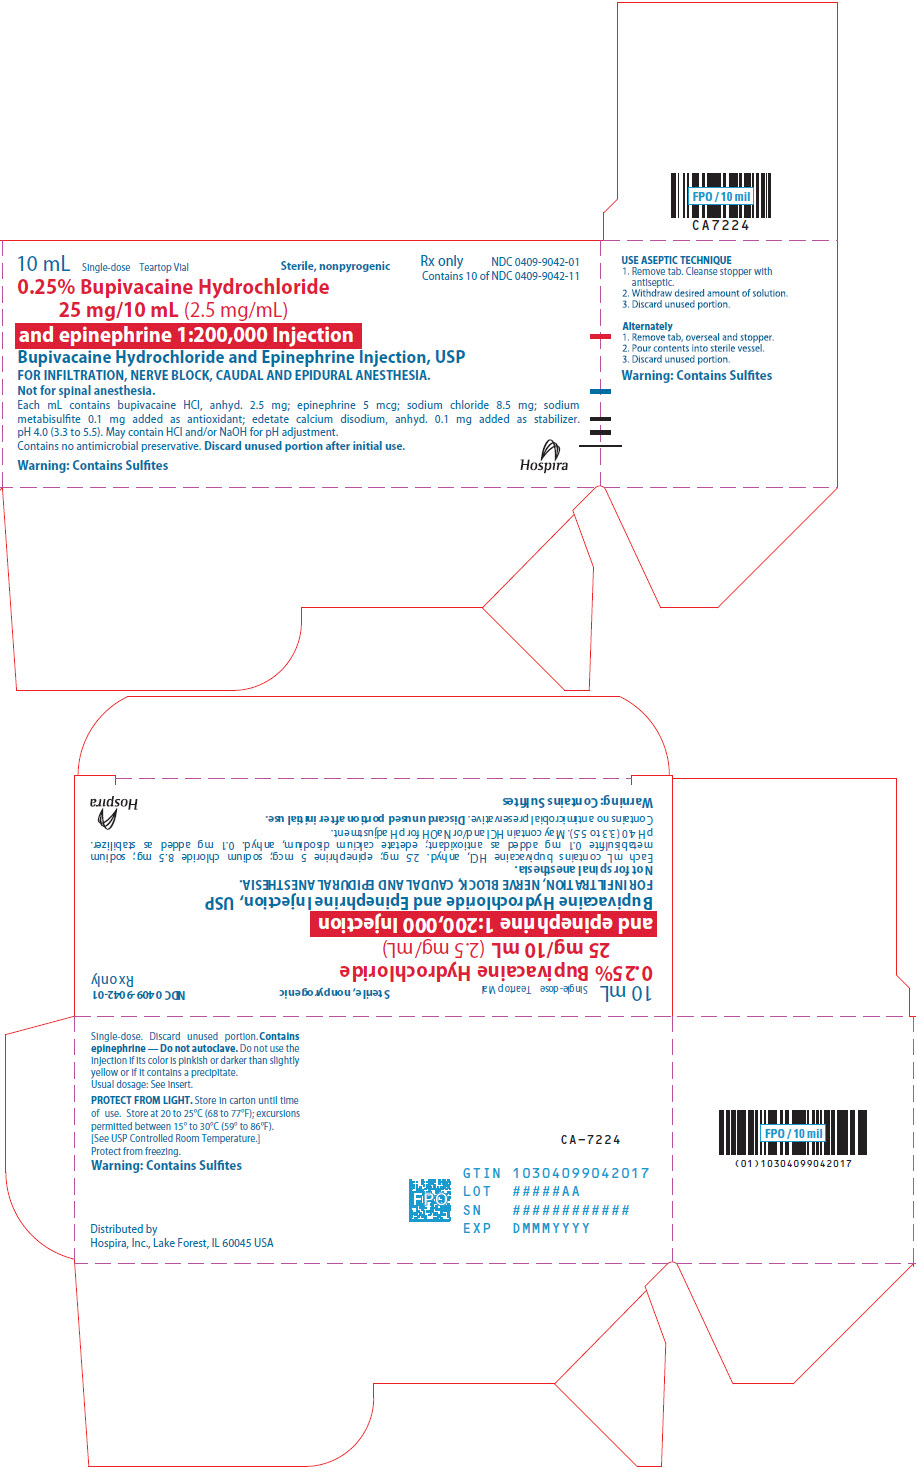 PRINCIPAL DISPLAY PANEL - 25 mg/10 mL Vial Label - 1159